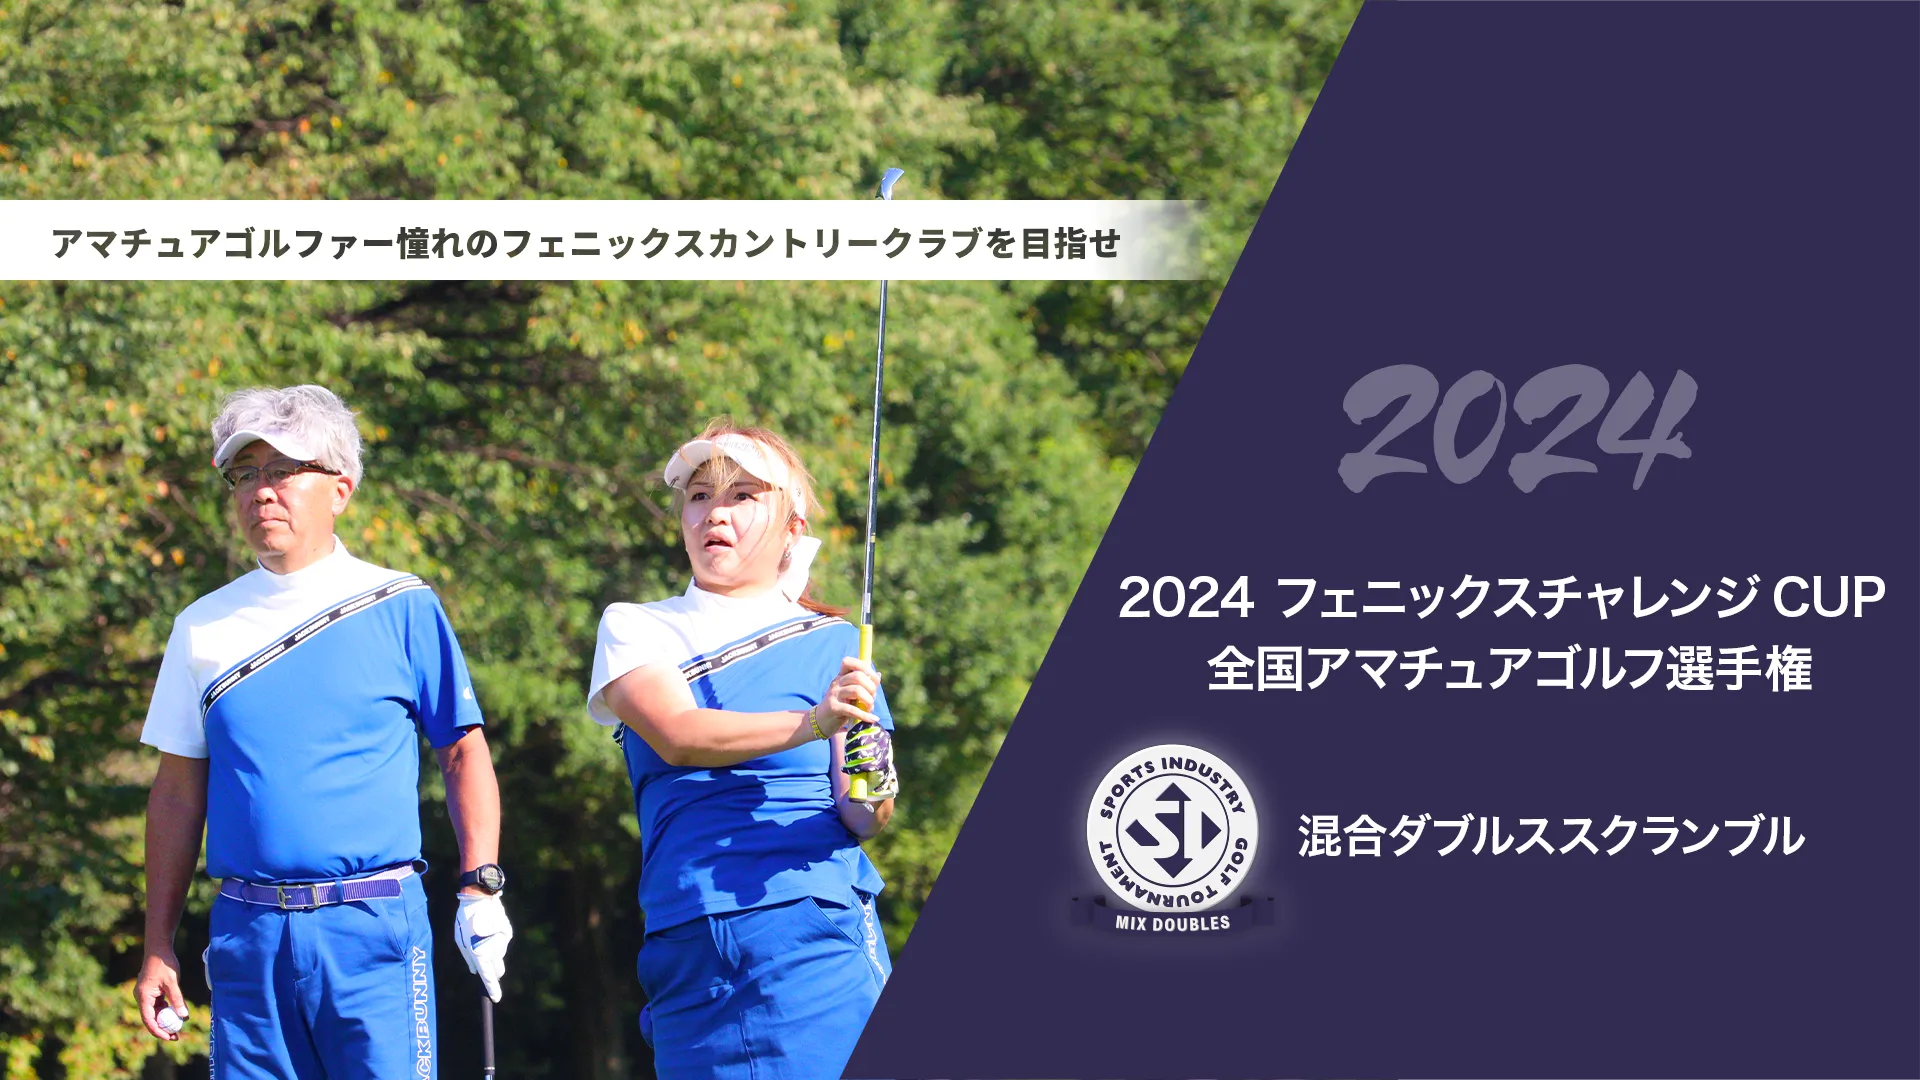 2024フェニックスチャレンジCUP_全国アマチュアゴルフ選手権_混合ダブルススクランブル